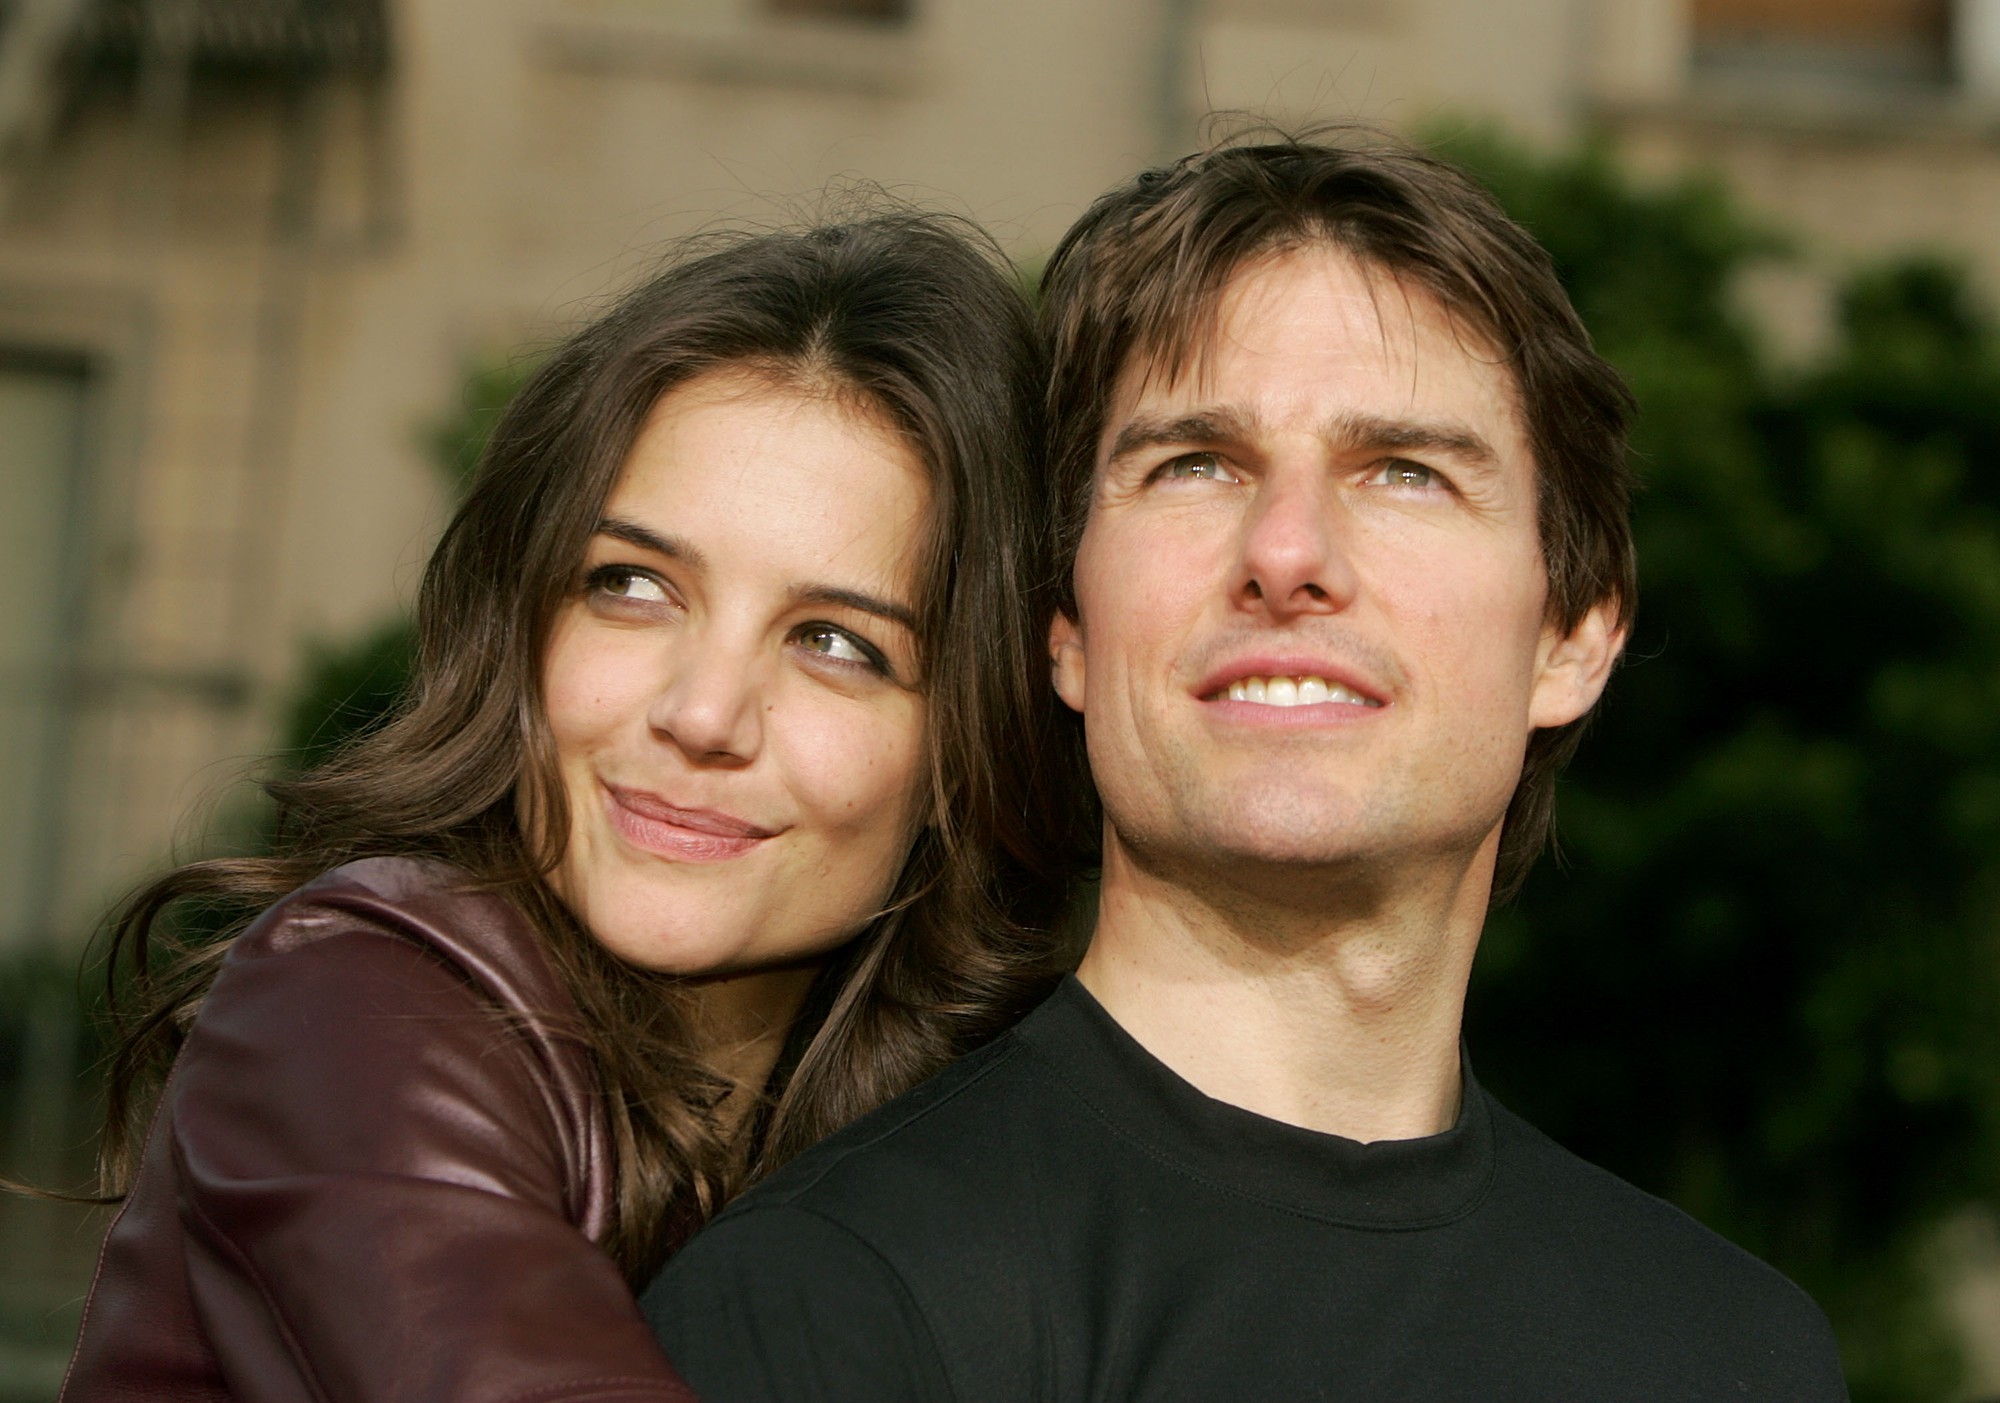 Bí ẩn cuộc hôn nhân địa ngục của Katie Holmes và Tom Cruise: Ngỡ trúng số vì lấy chồng giàu và đẹp, nào ngờ suốt 10 năm ôm con tháo chạy - Ảnh 3.